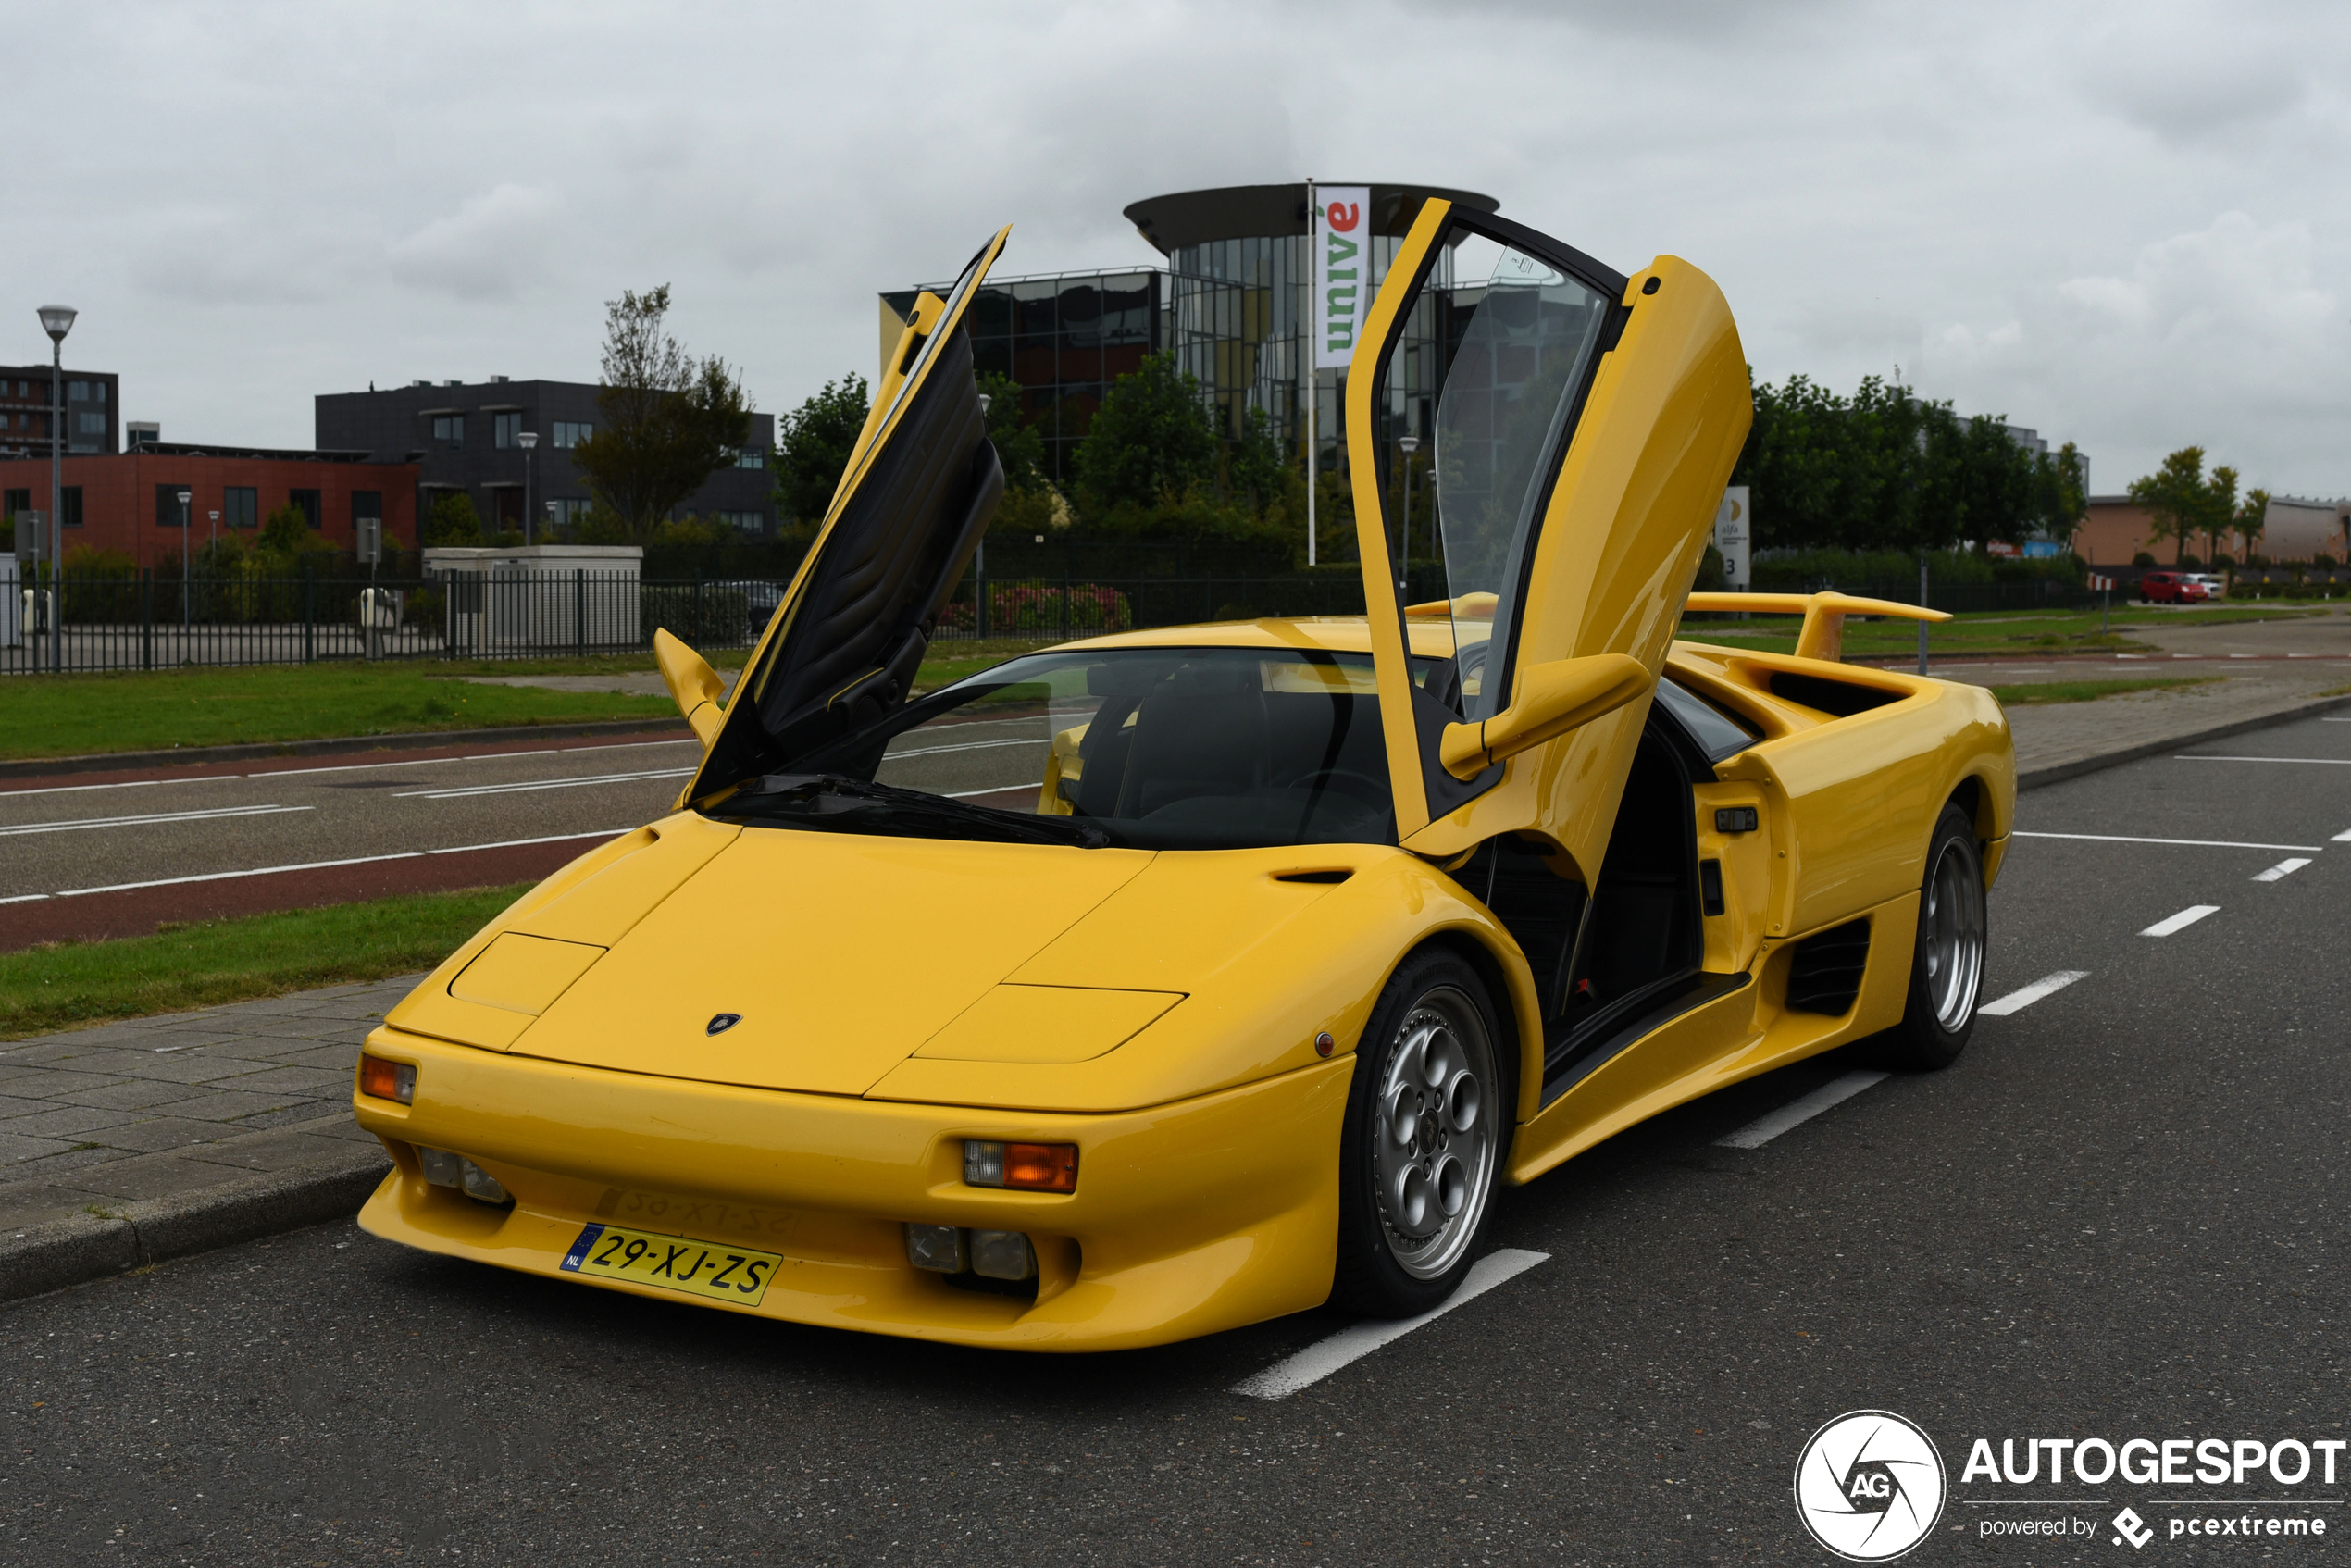 Is deze Lamborghini Diablo VT met pensioen?